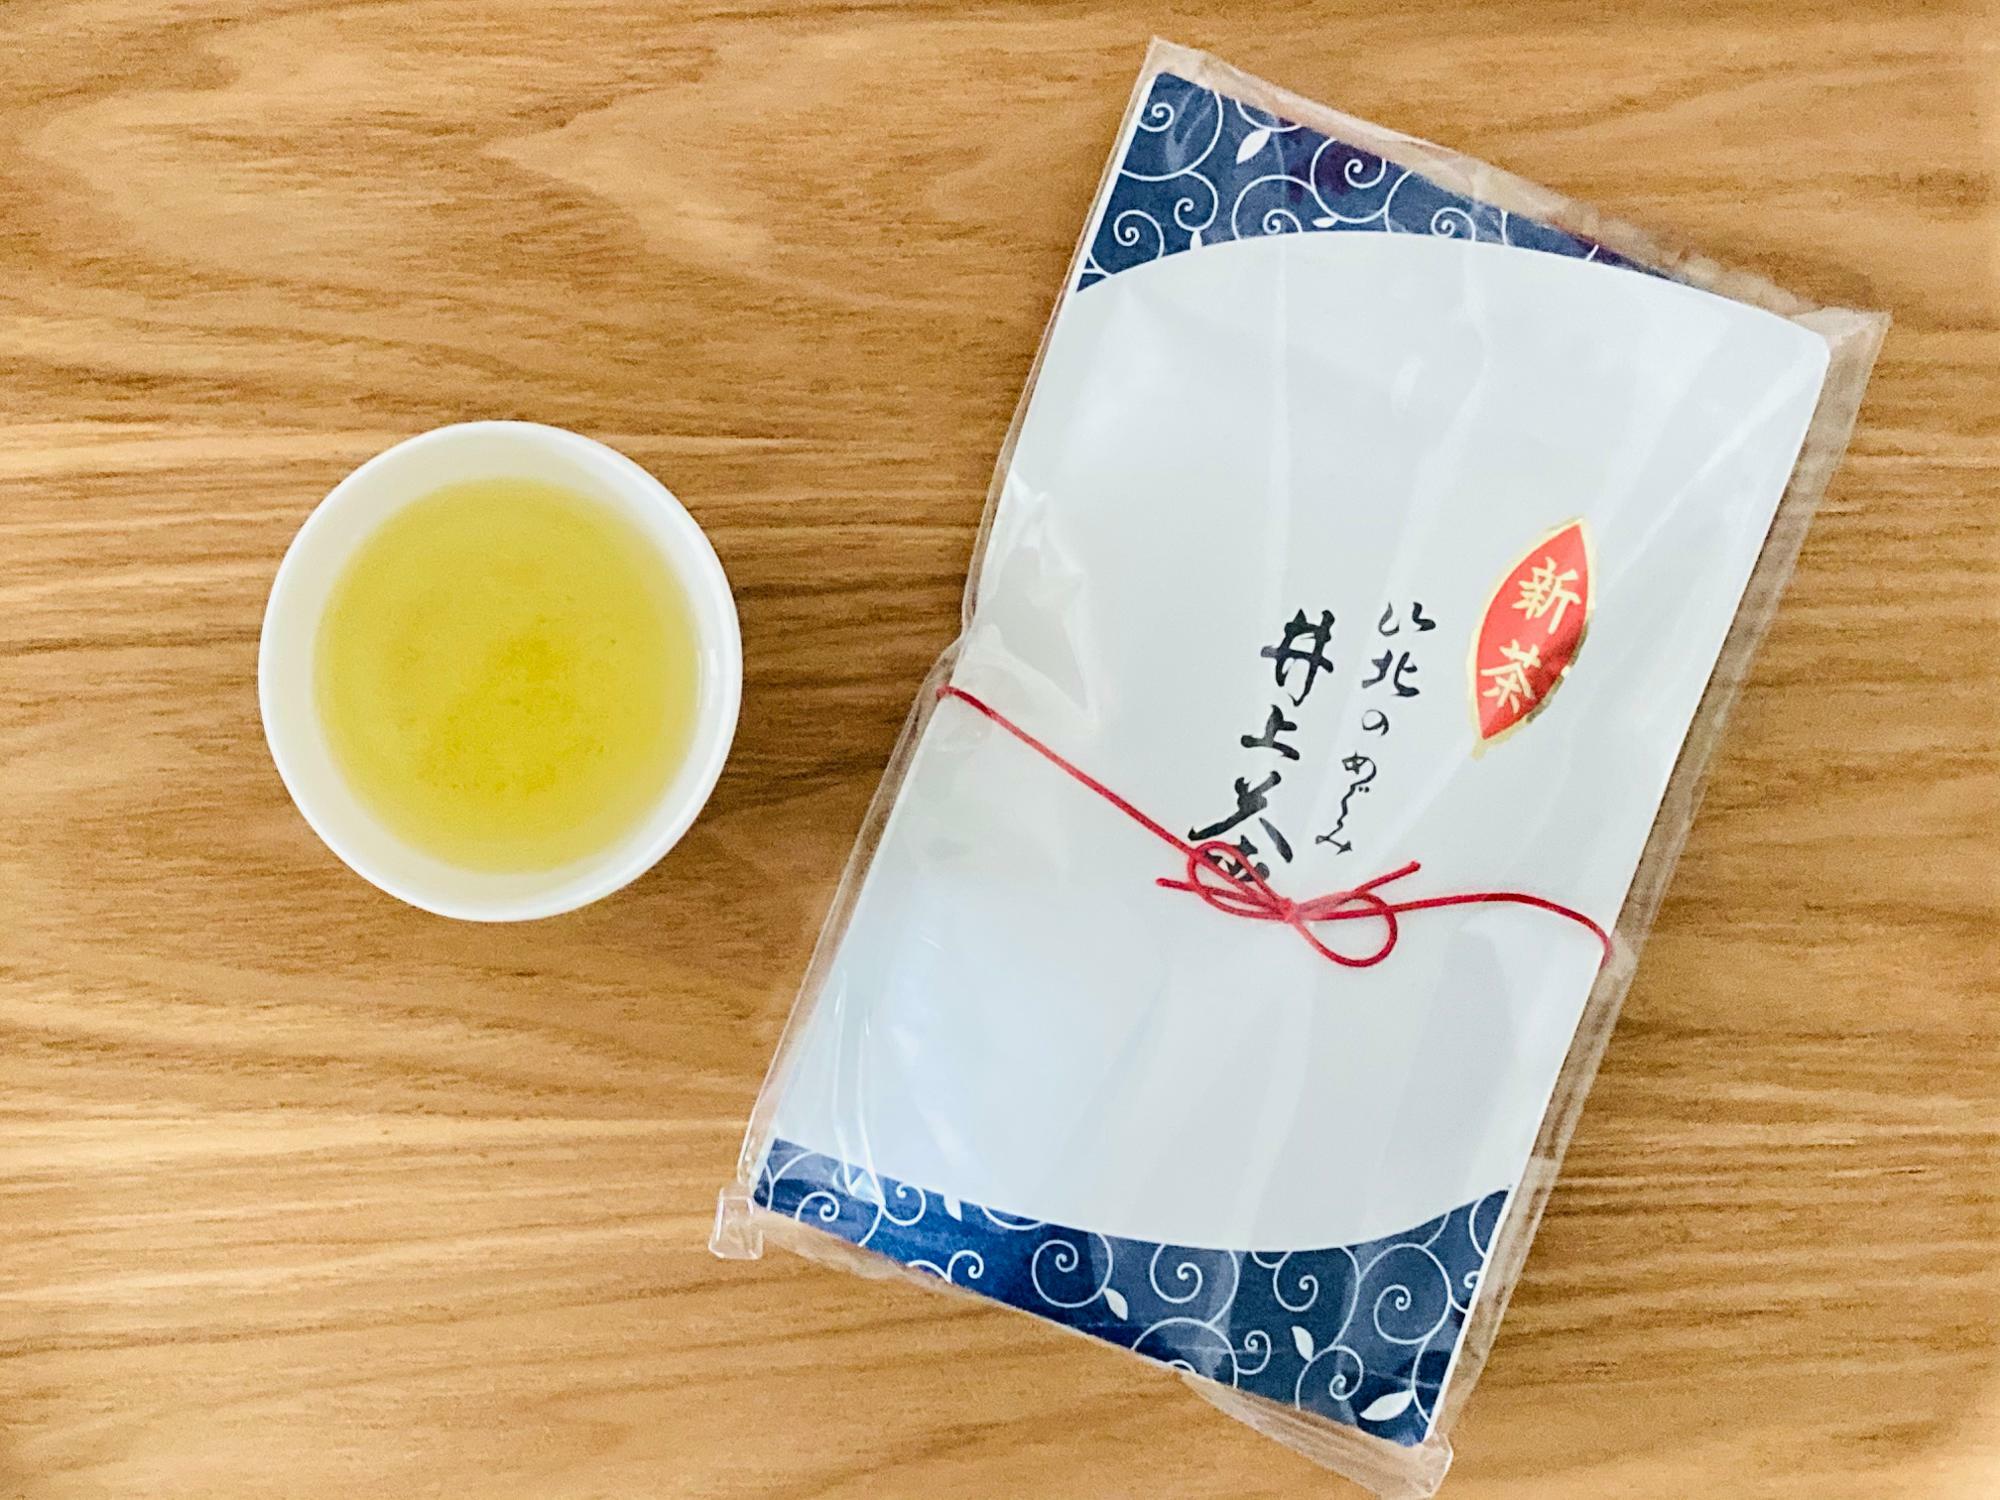 今年の井上さんの新茶。無被覆の普通煎茶。自然で優しい味わい。パッケージの中には生産者からのメッセージと、お茶のいれ方のリーフレットも入っています。